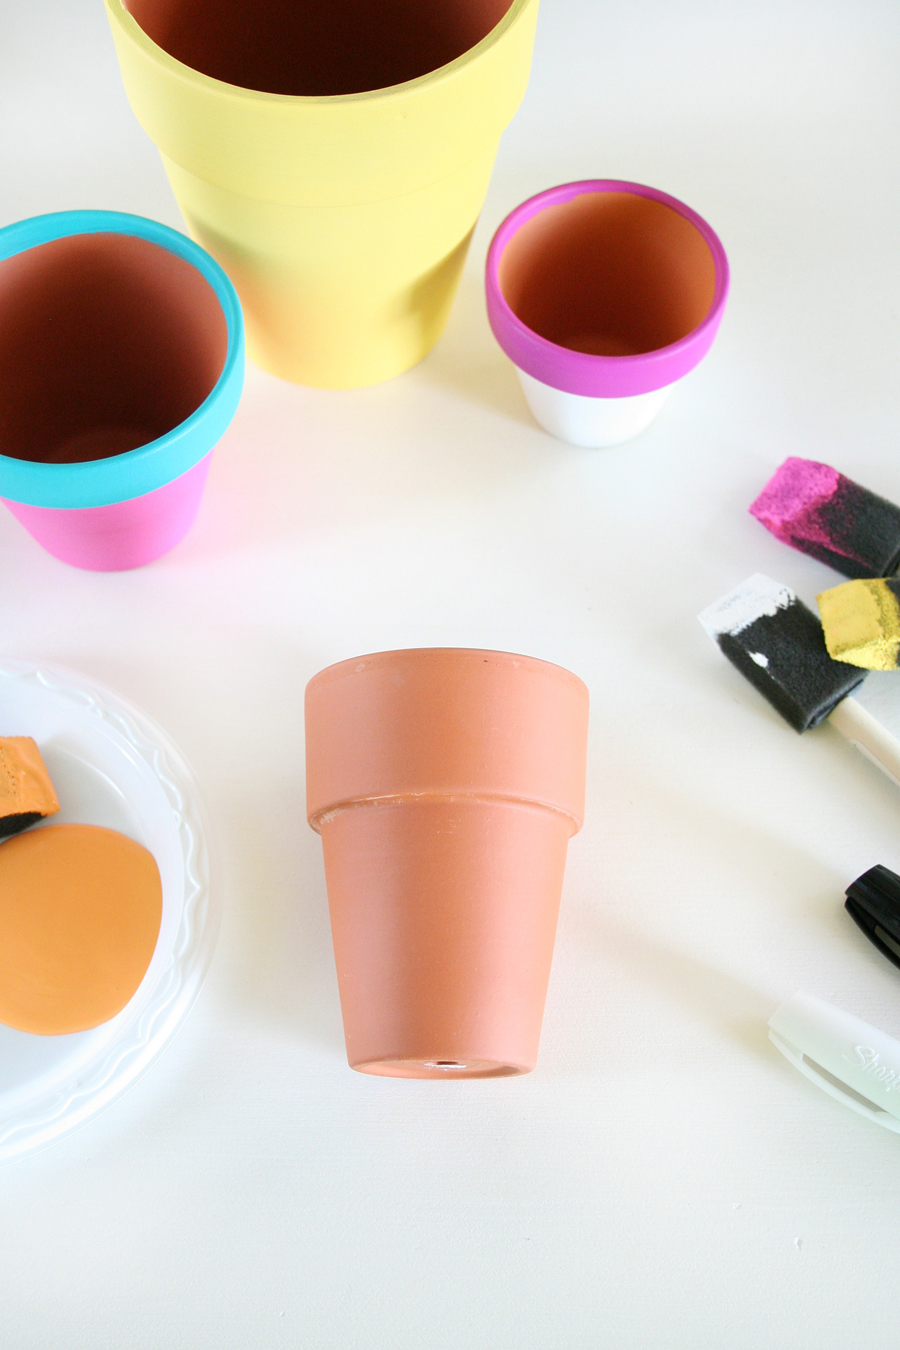 fabriquer un diy pot de fleur soi meme, des pots en terre cuite customisés à la peinture acrylique, motif fruit tropical, activité créative adulte